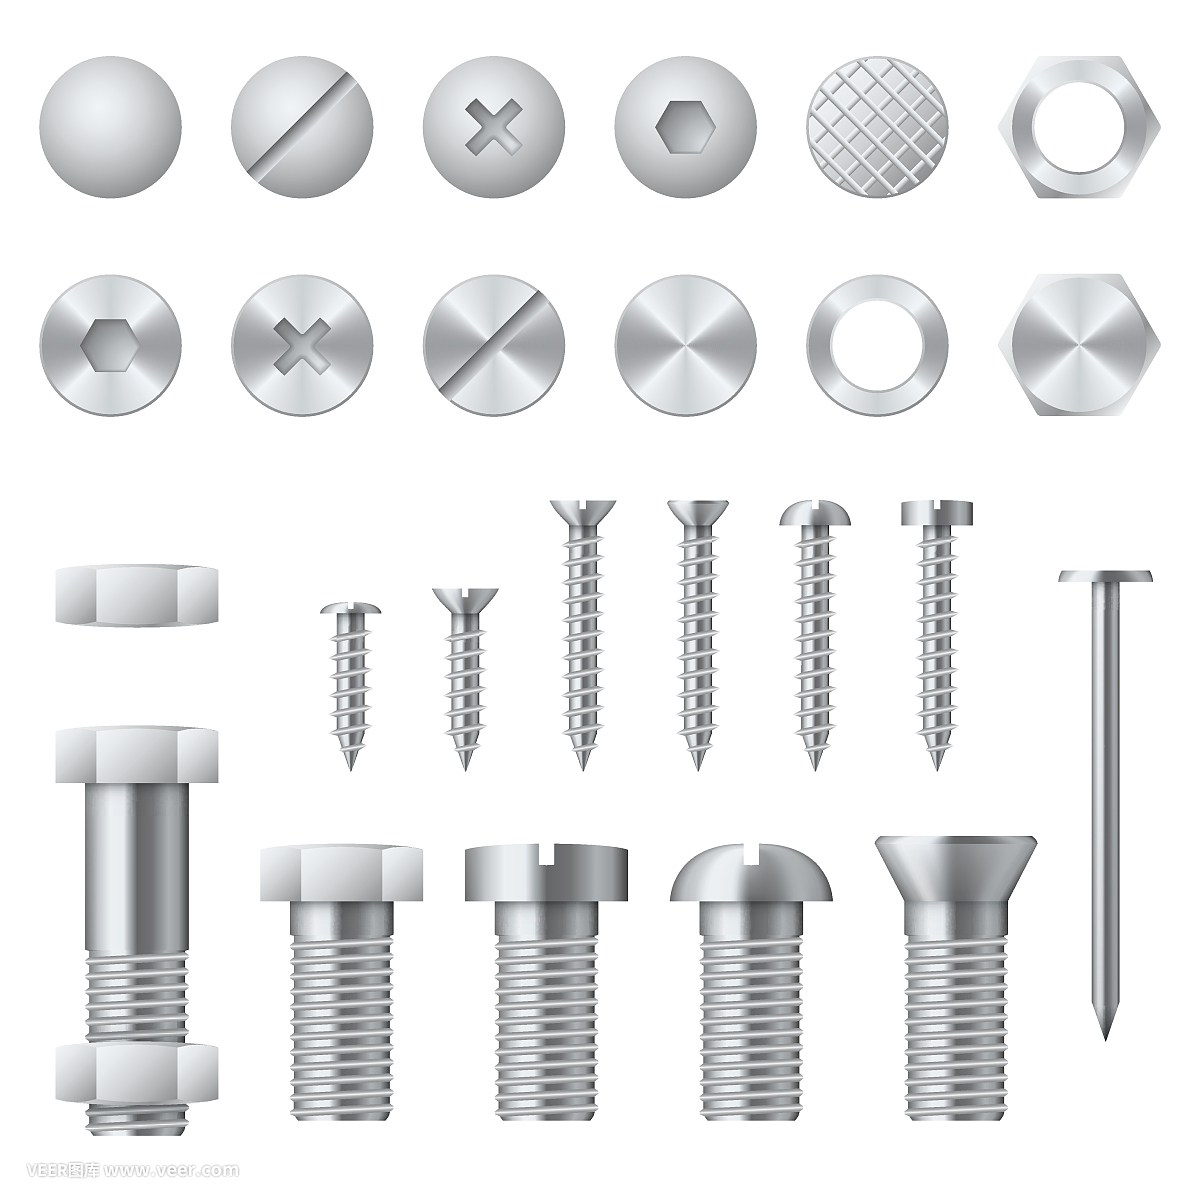 螺丝,螺栓,螺母,钉子和铆钉现实的矢量设计元素